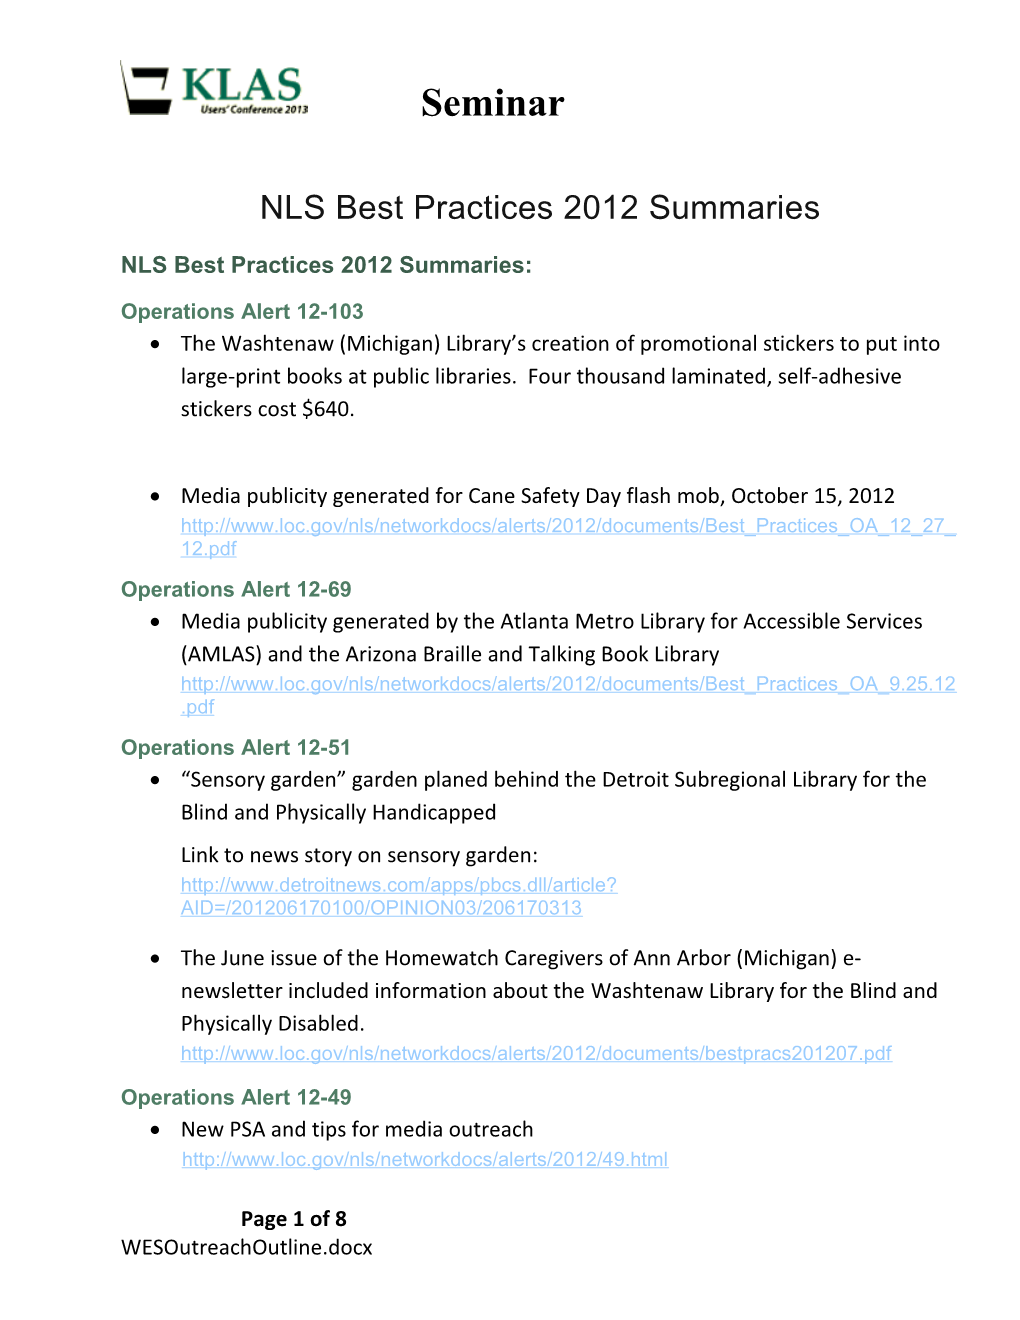 NLS Best Practices 2012 Summaries